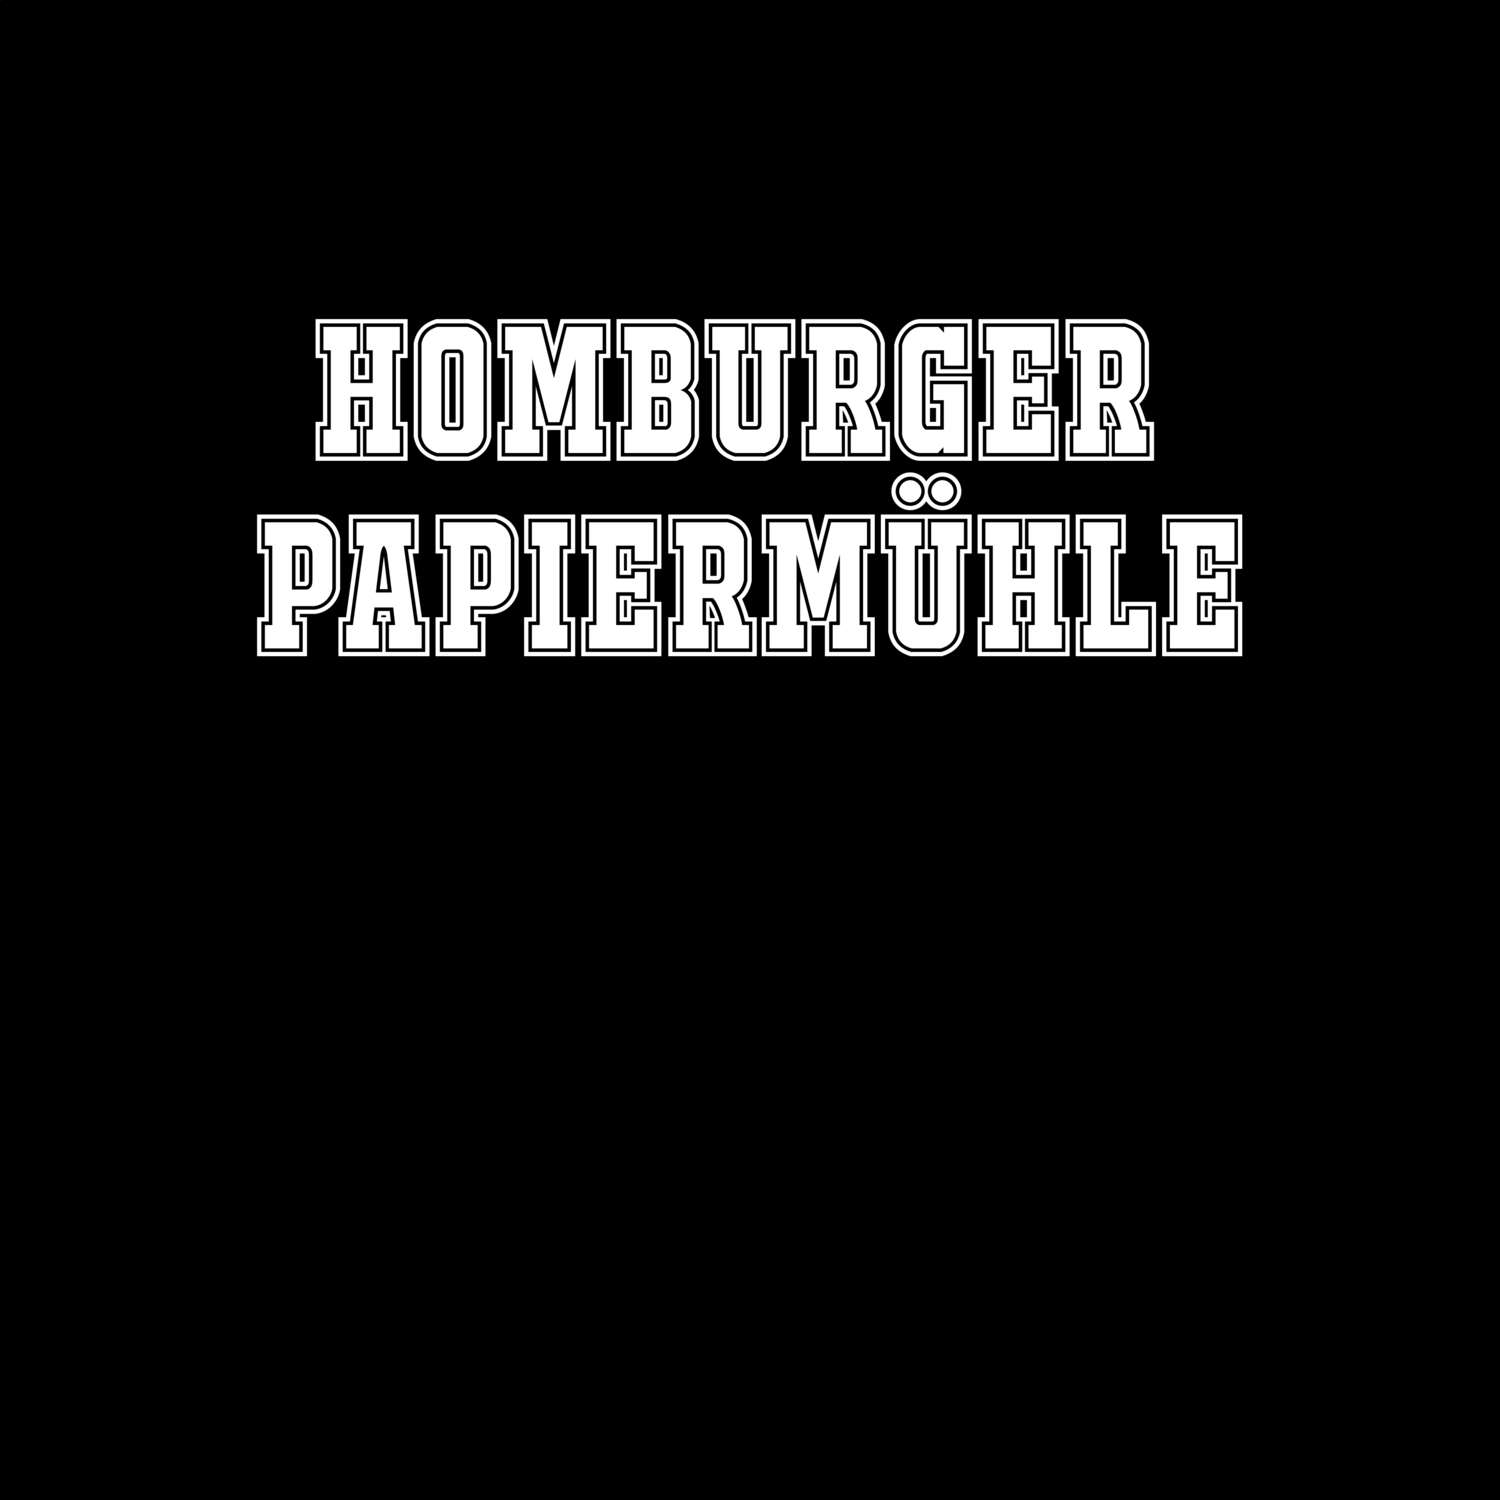 Homburger Papiermühle T-Shirt »Classic«